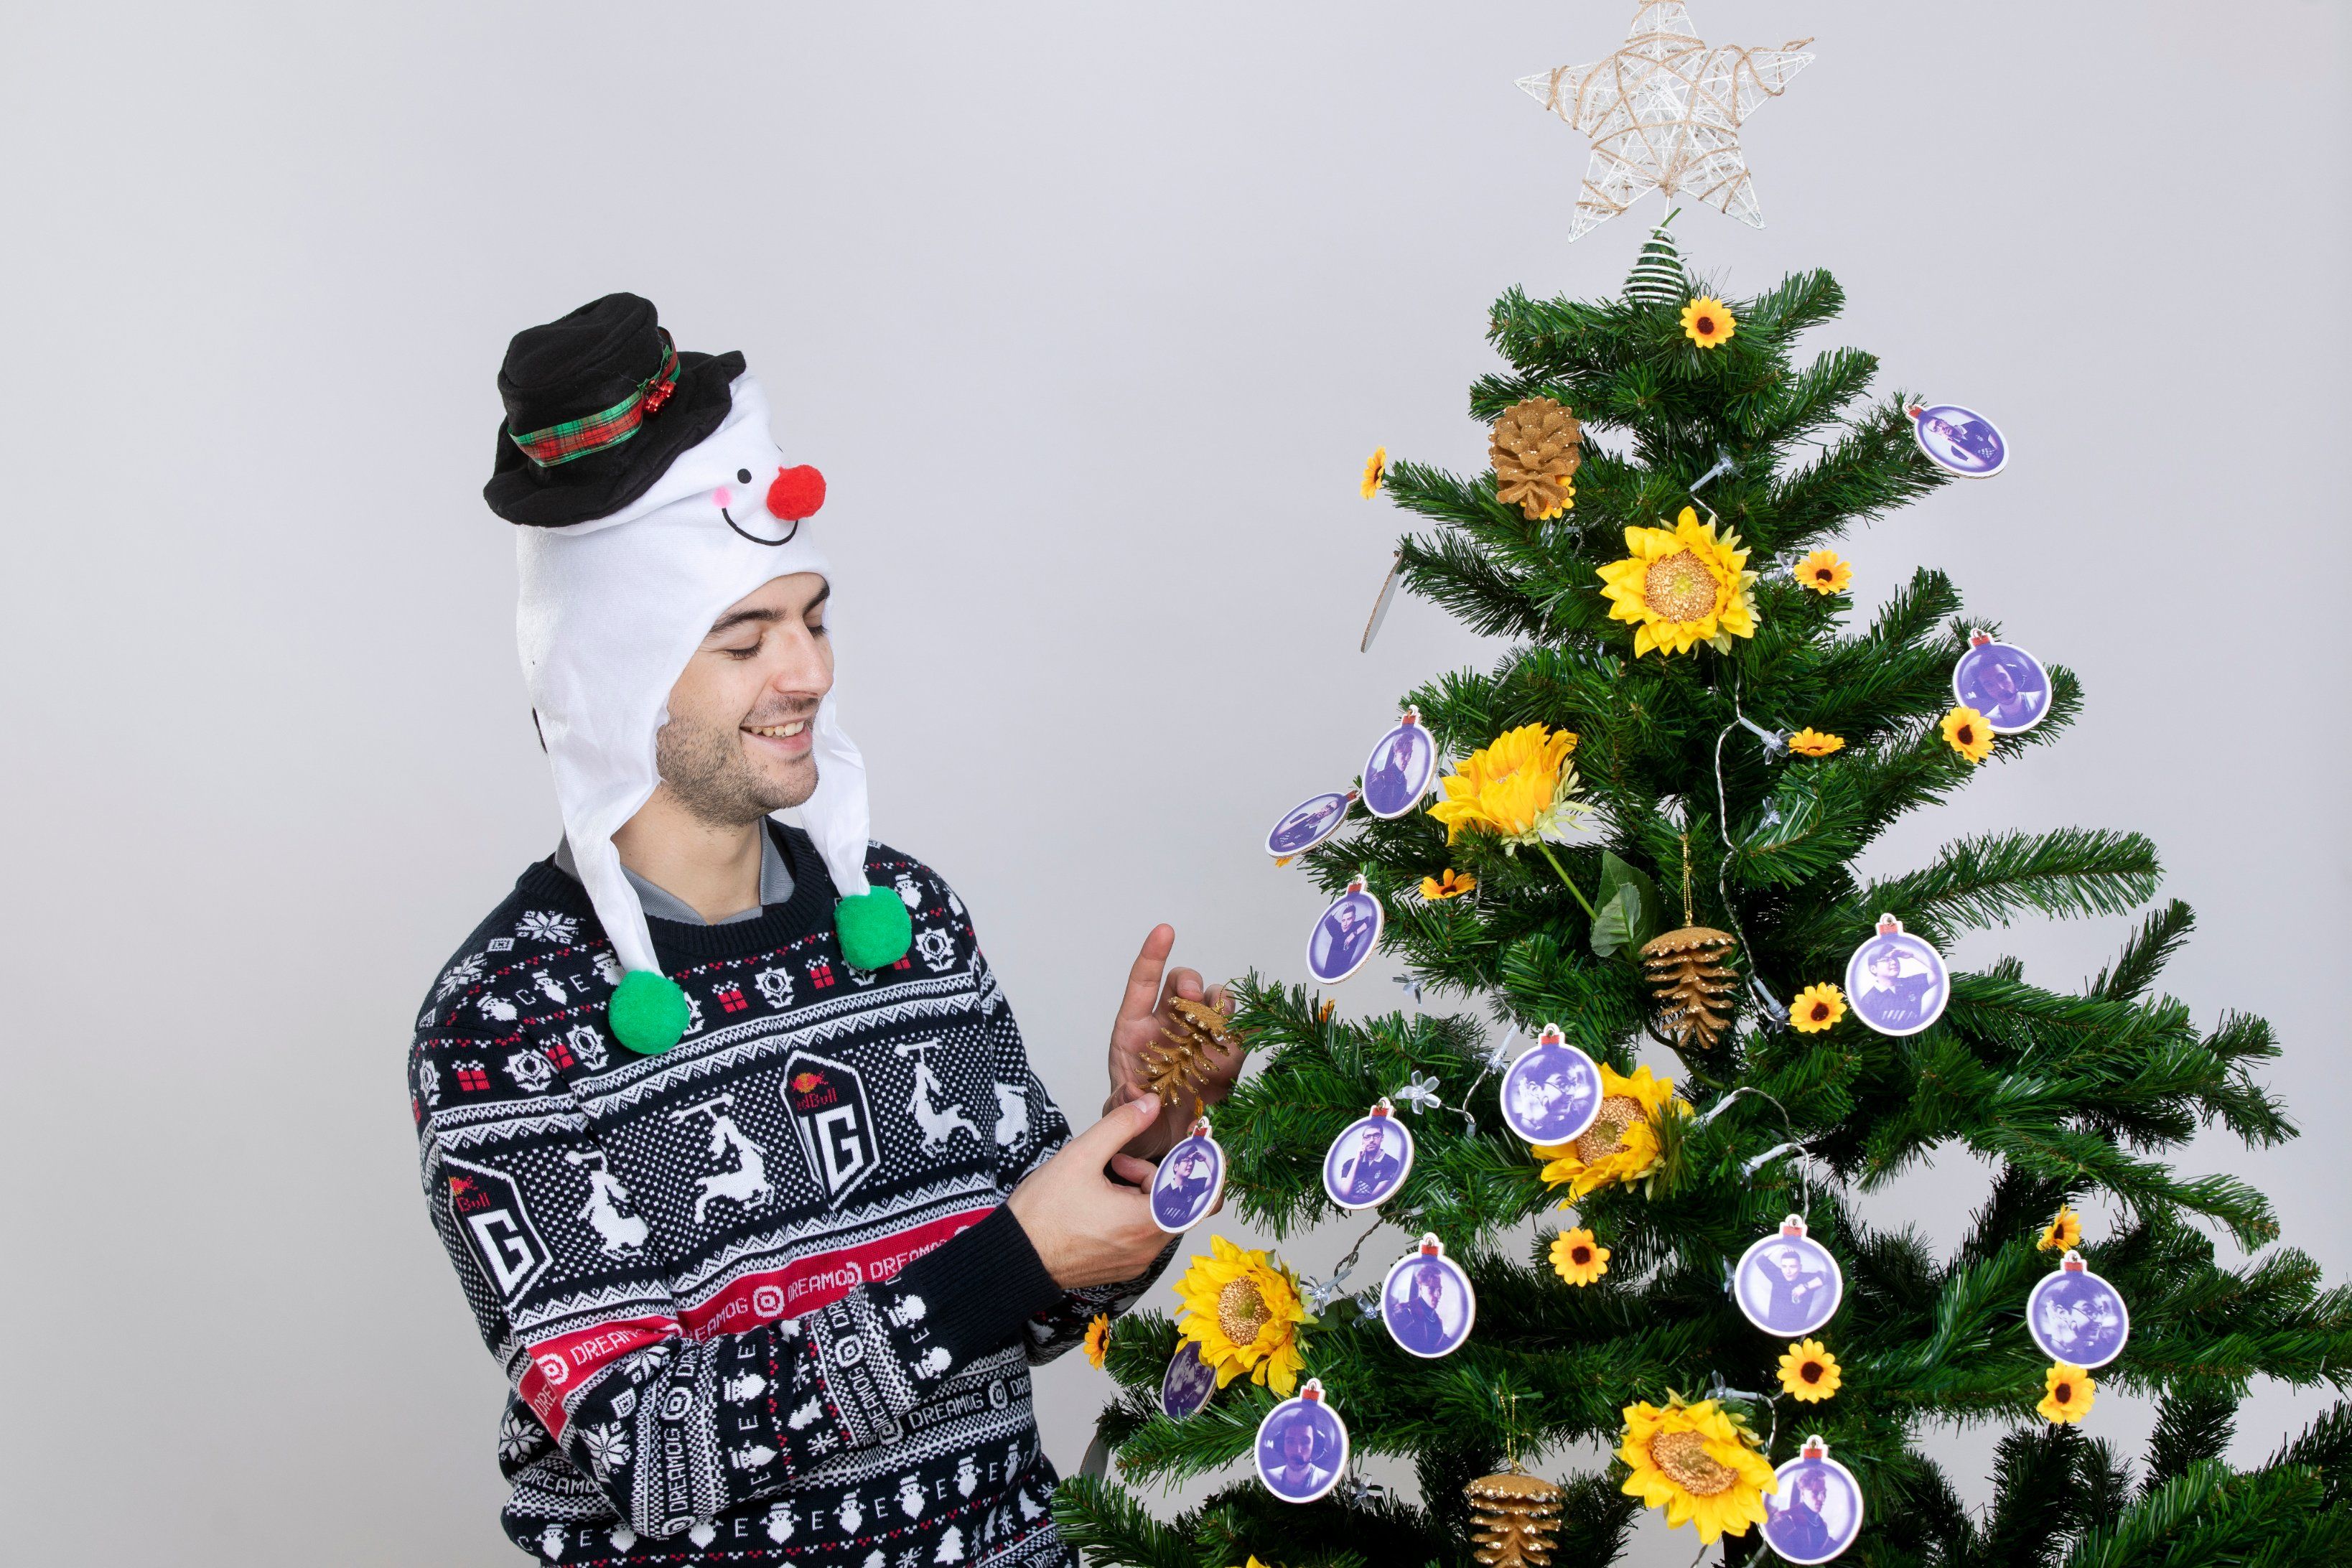 Ceb в рождественском свитере OG.
Источник: OG